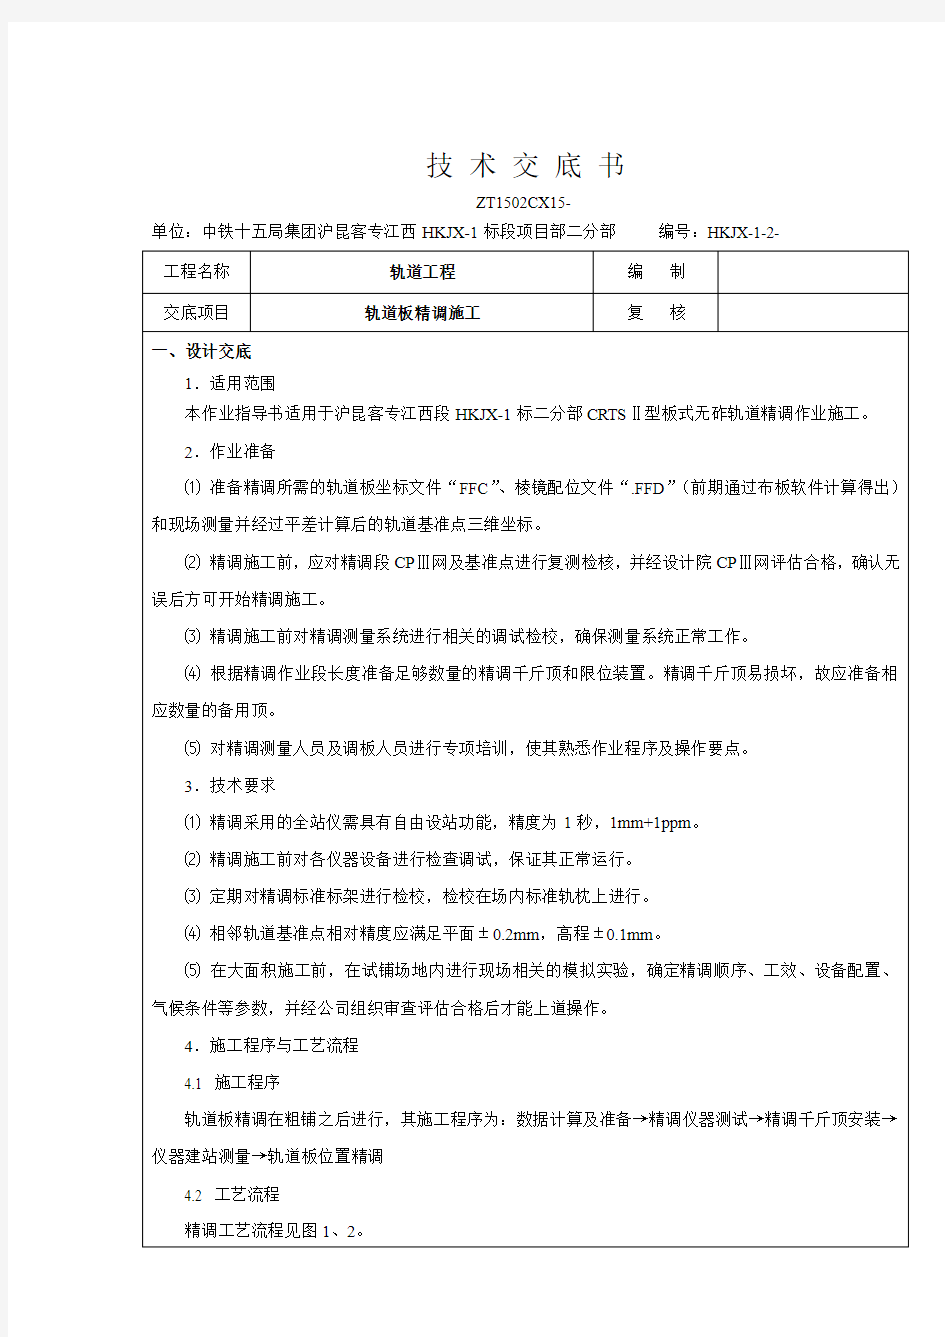 沪昆客专江西HKJX-1标轨道工程轨道板精调施工技术交底书